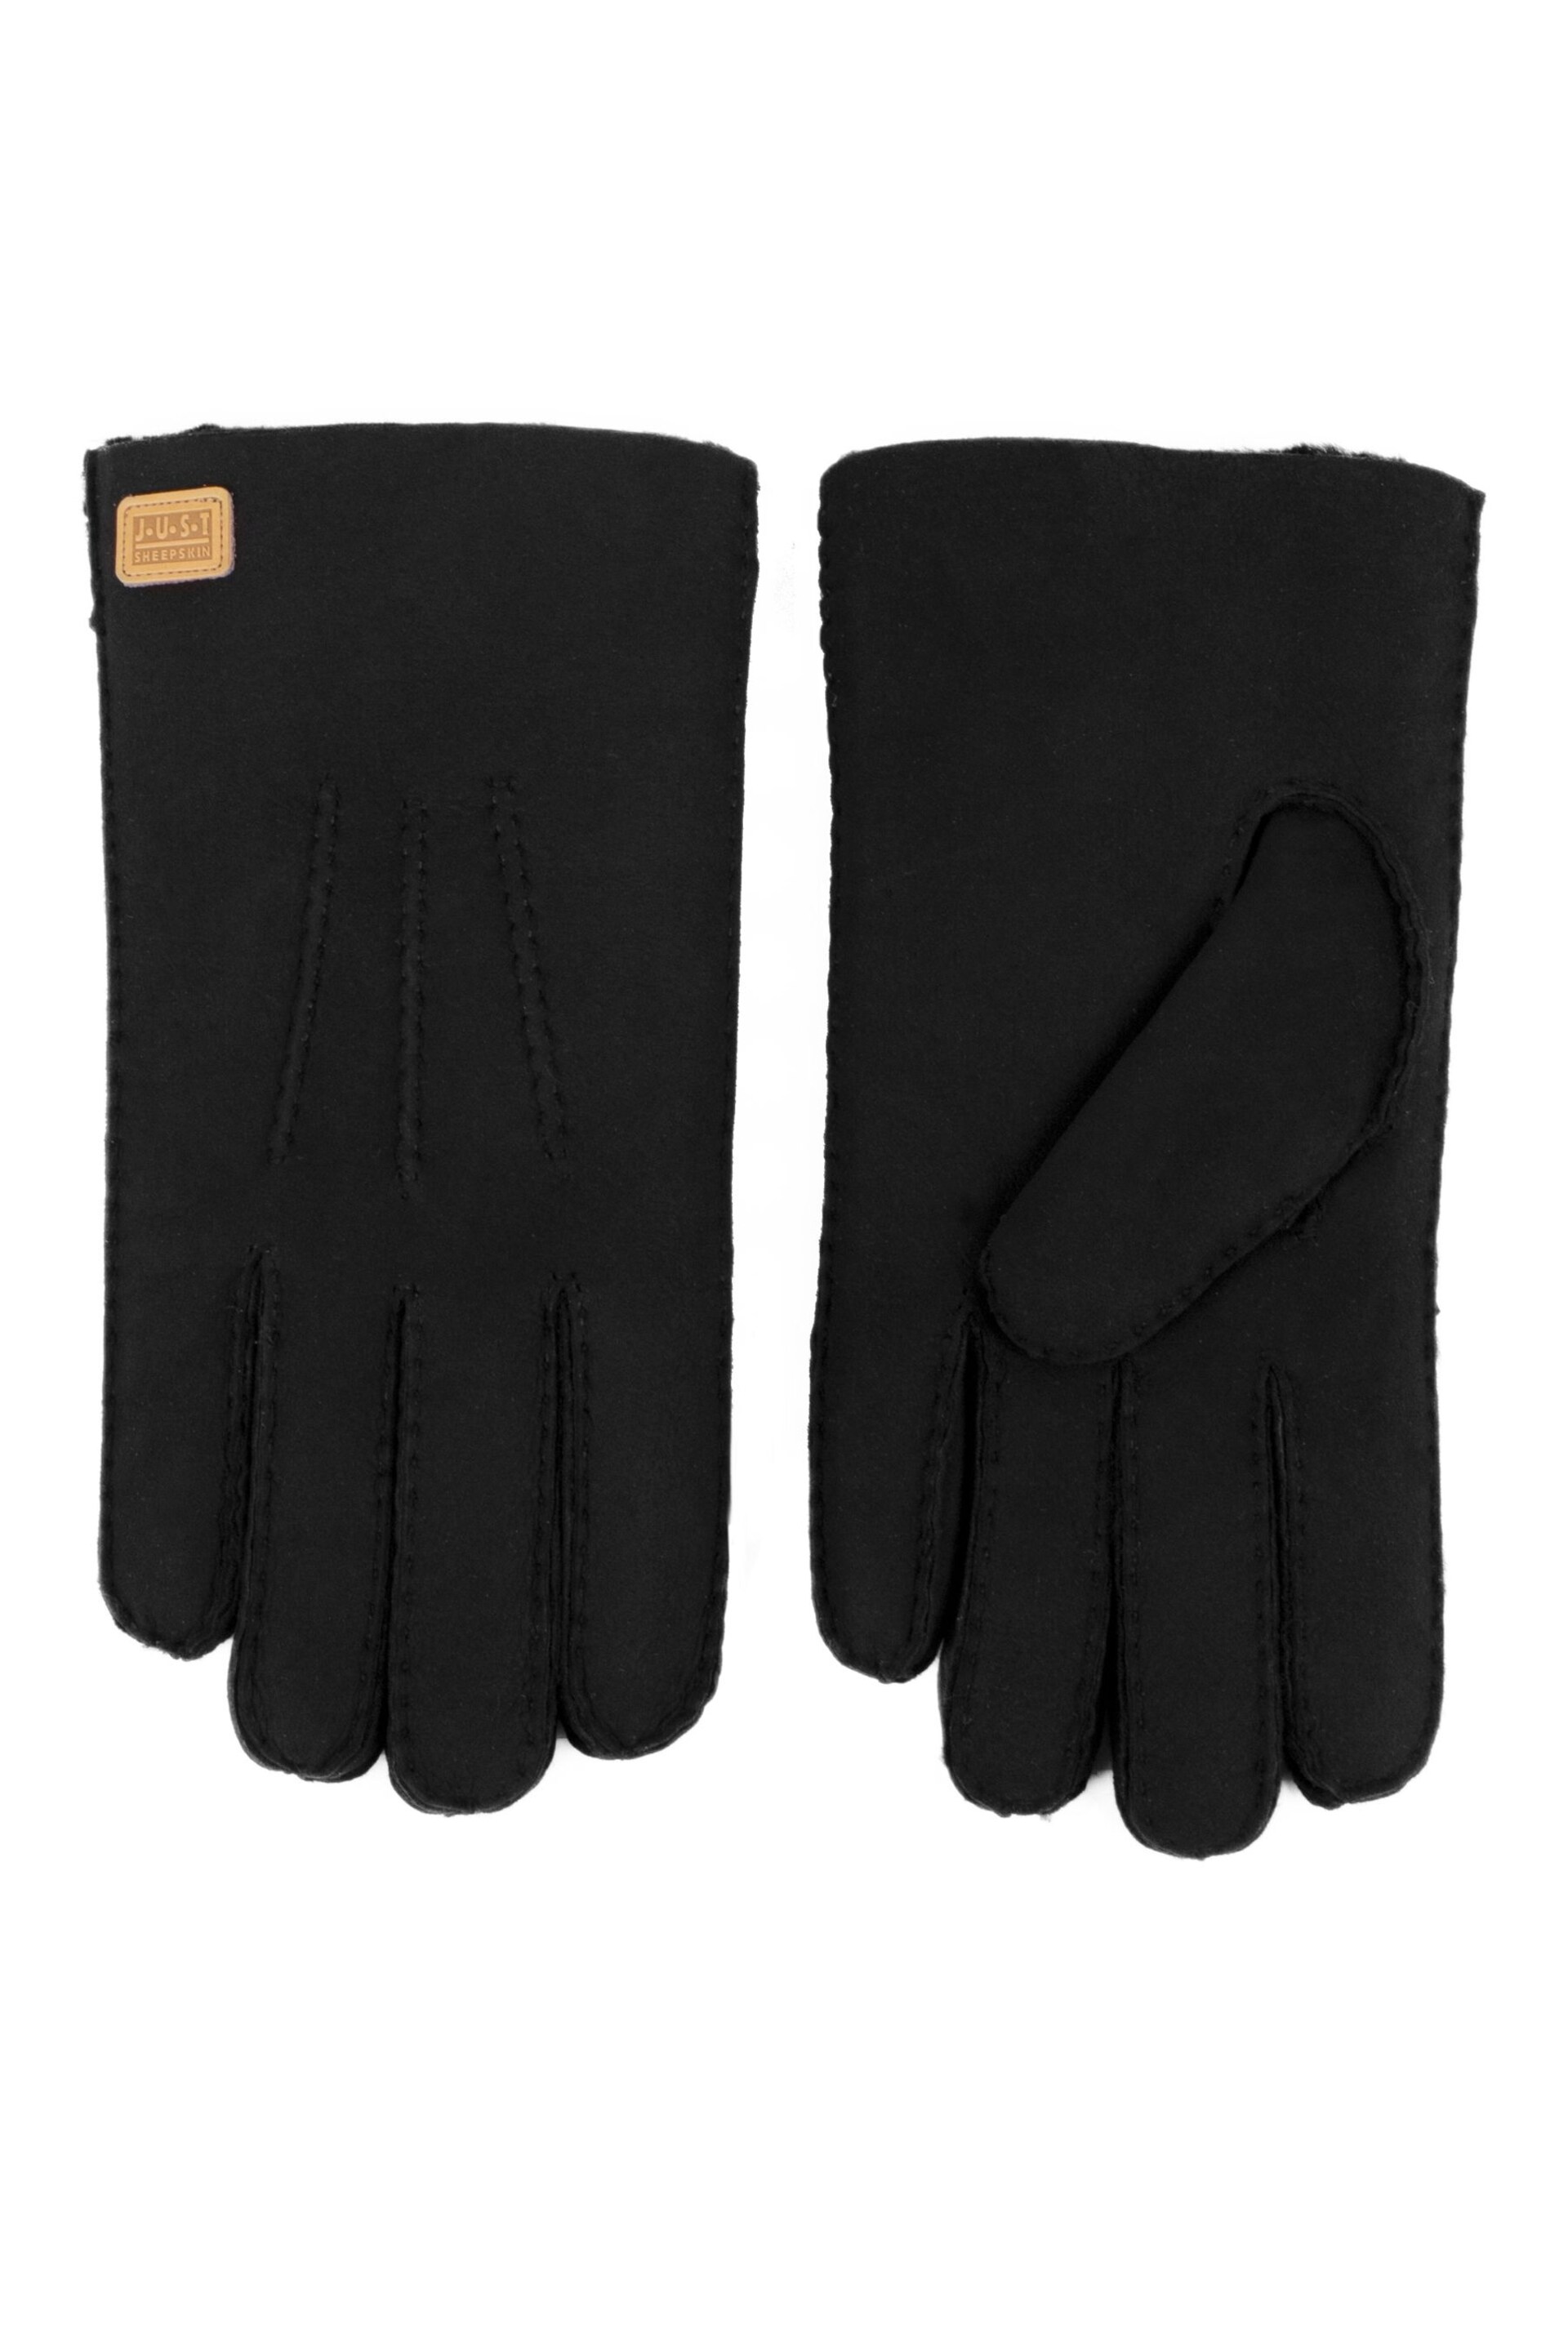 Just Sheepskin Black Rowan Sheepskin Glove - Image 3 of 4